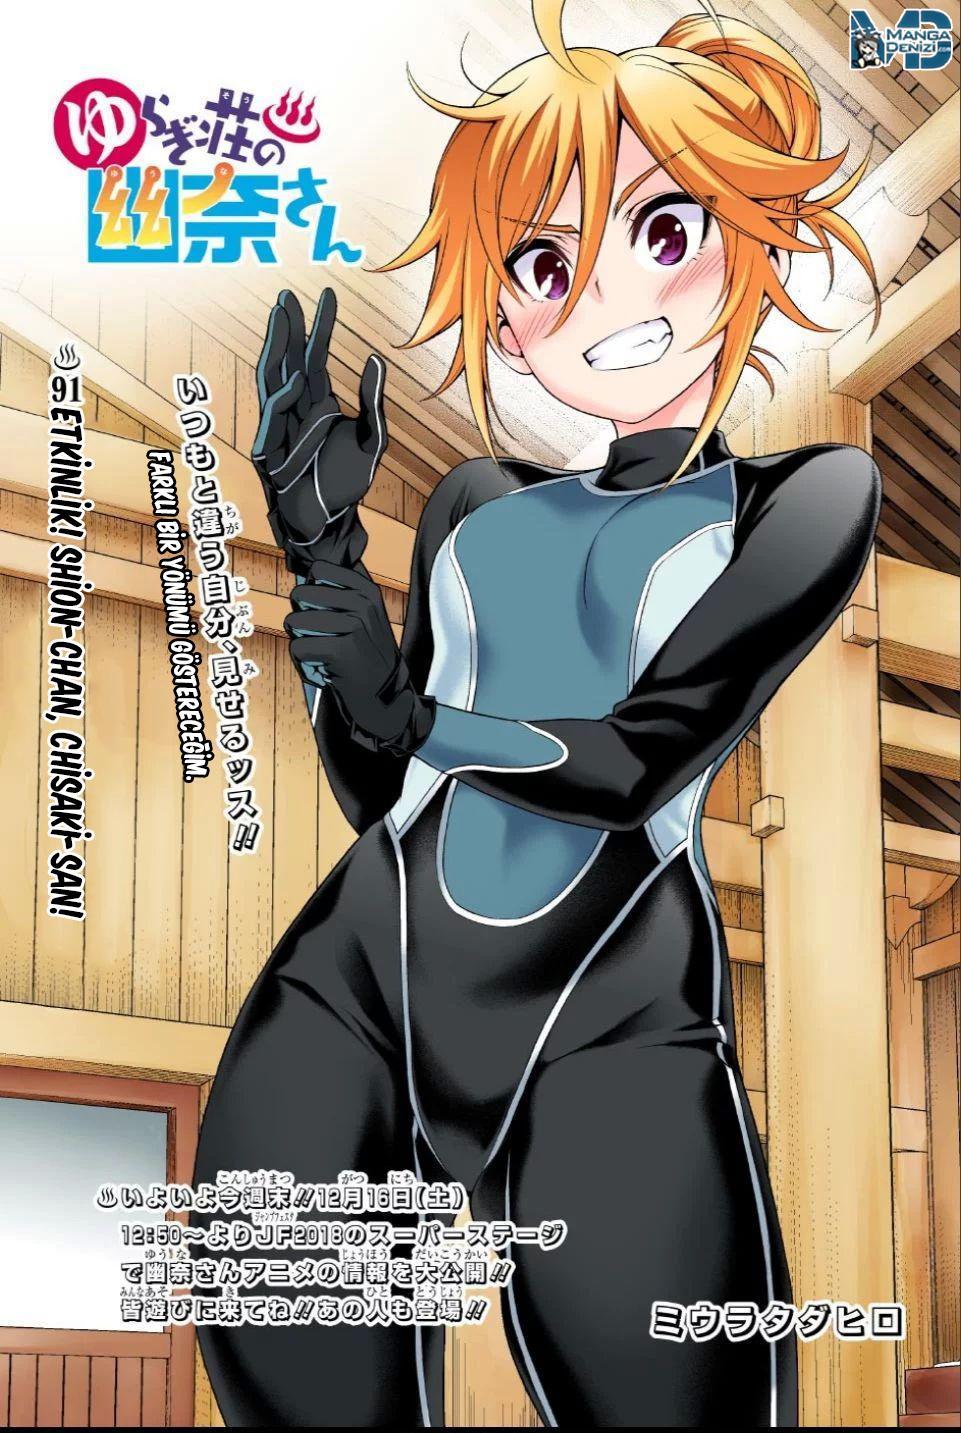 Yuragi-sou no Yuuna-san mangasının 091 bölümünün 2. sayfasını okuyorsunuz.